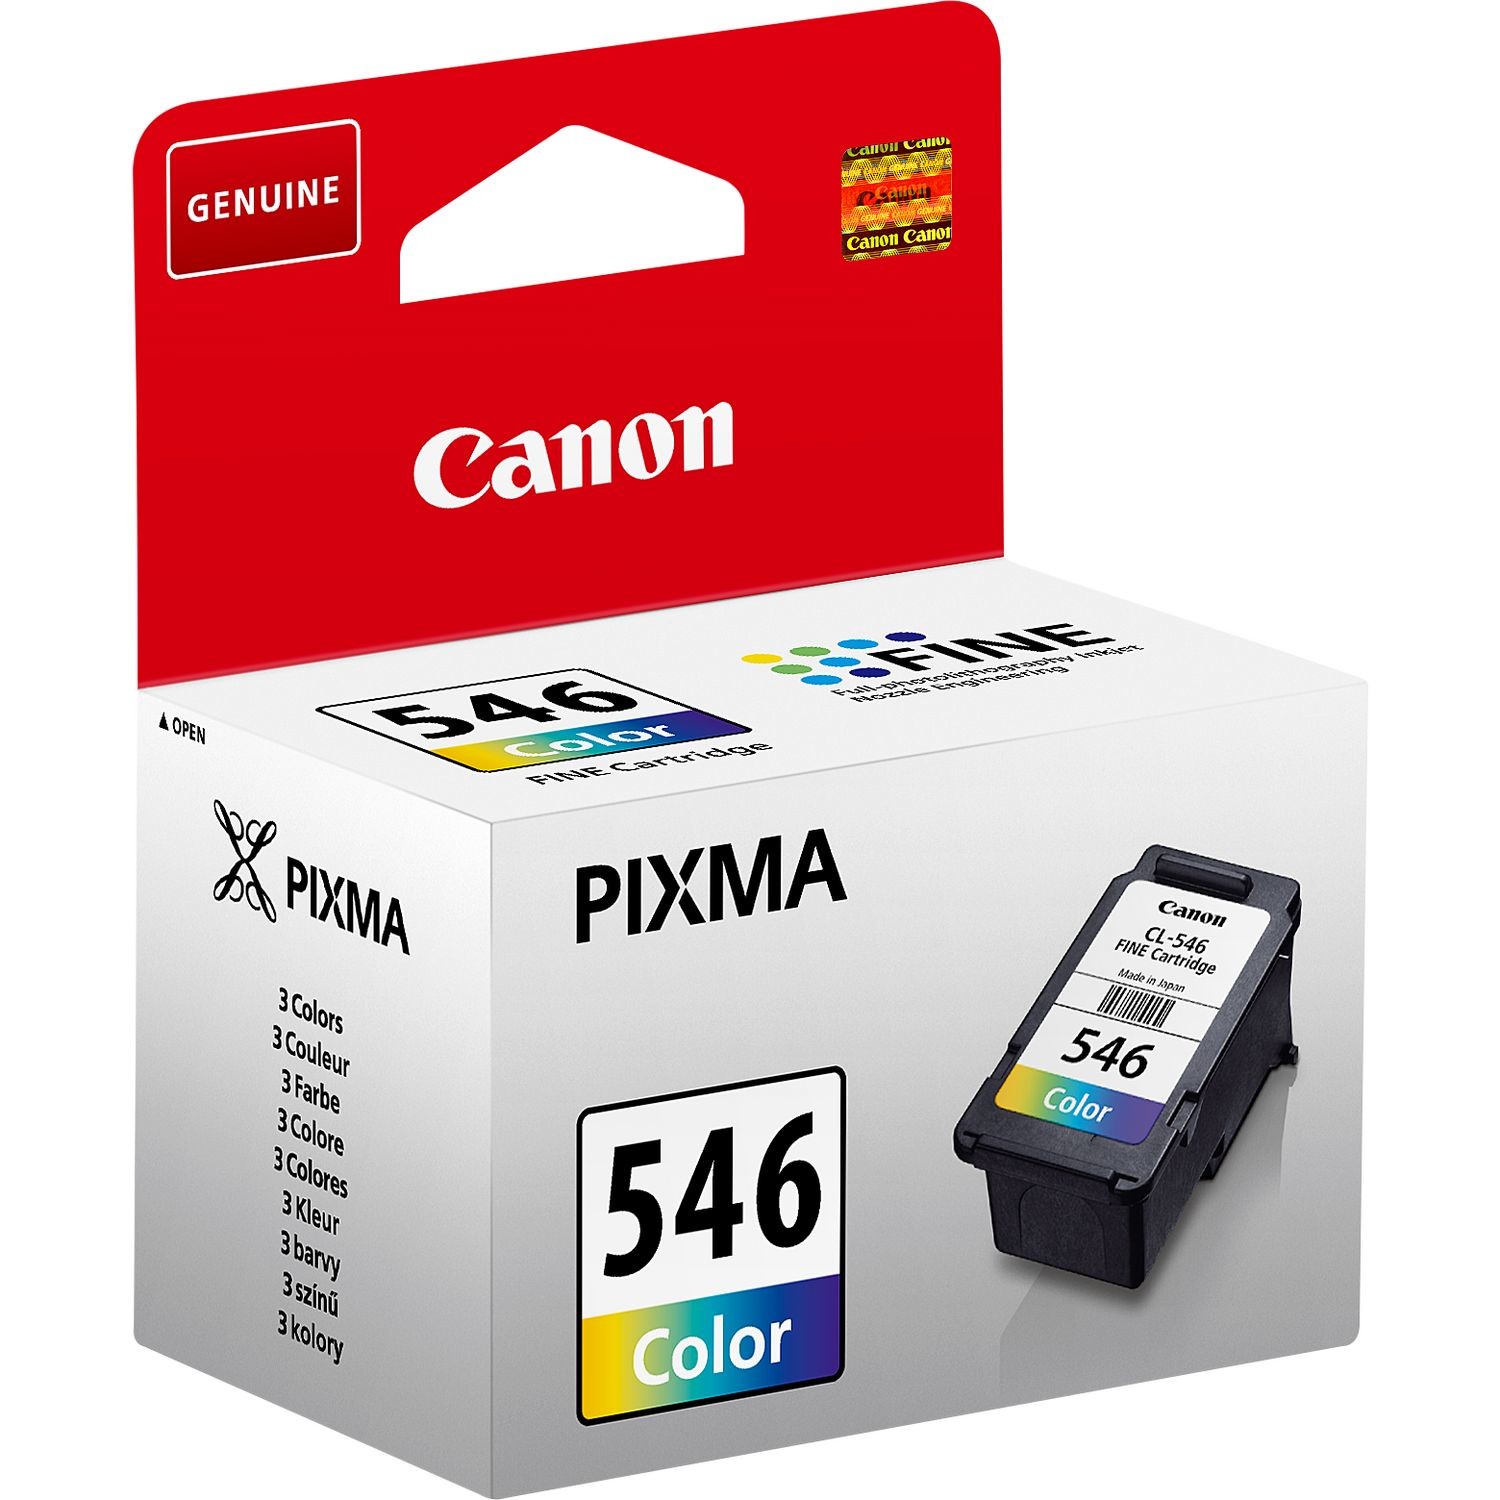 Imprimante Canon PIXMA MG2950S - Vente d'imprimantes et cartouches